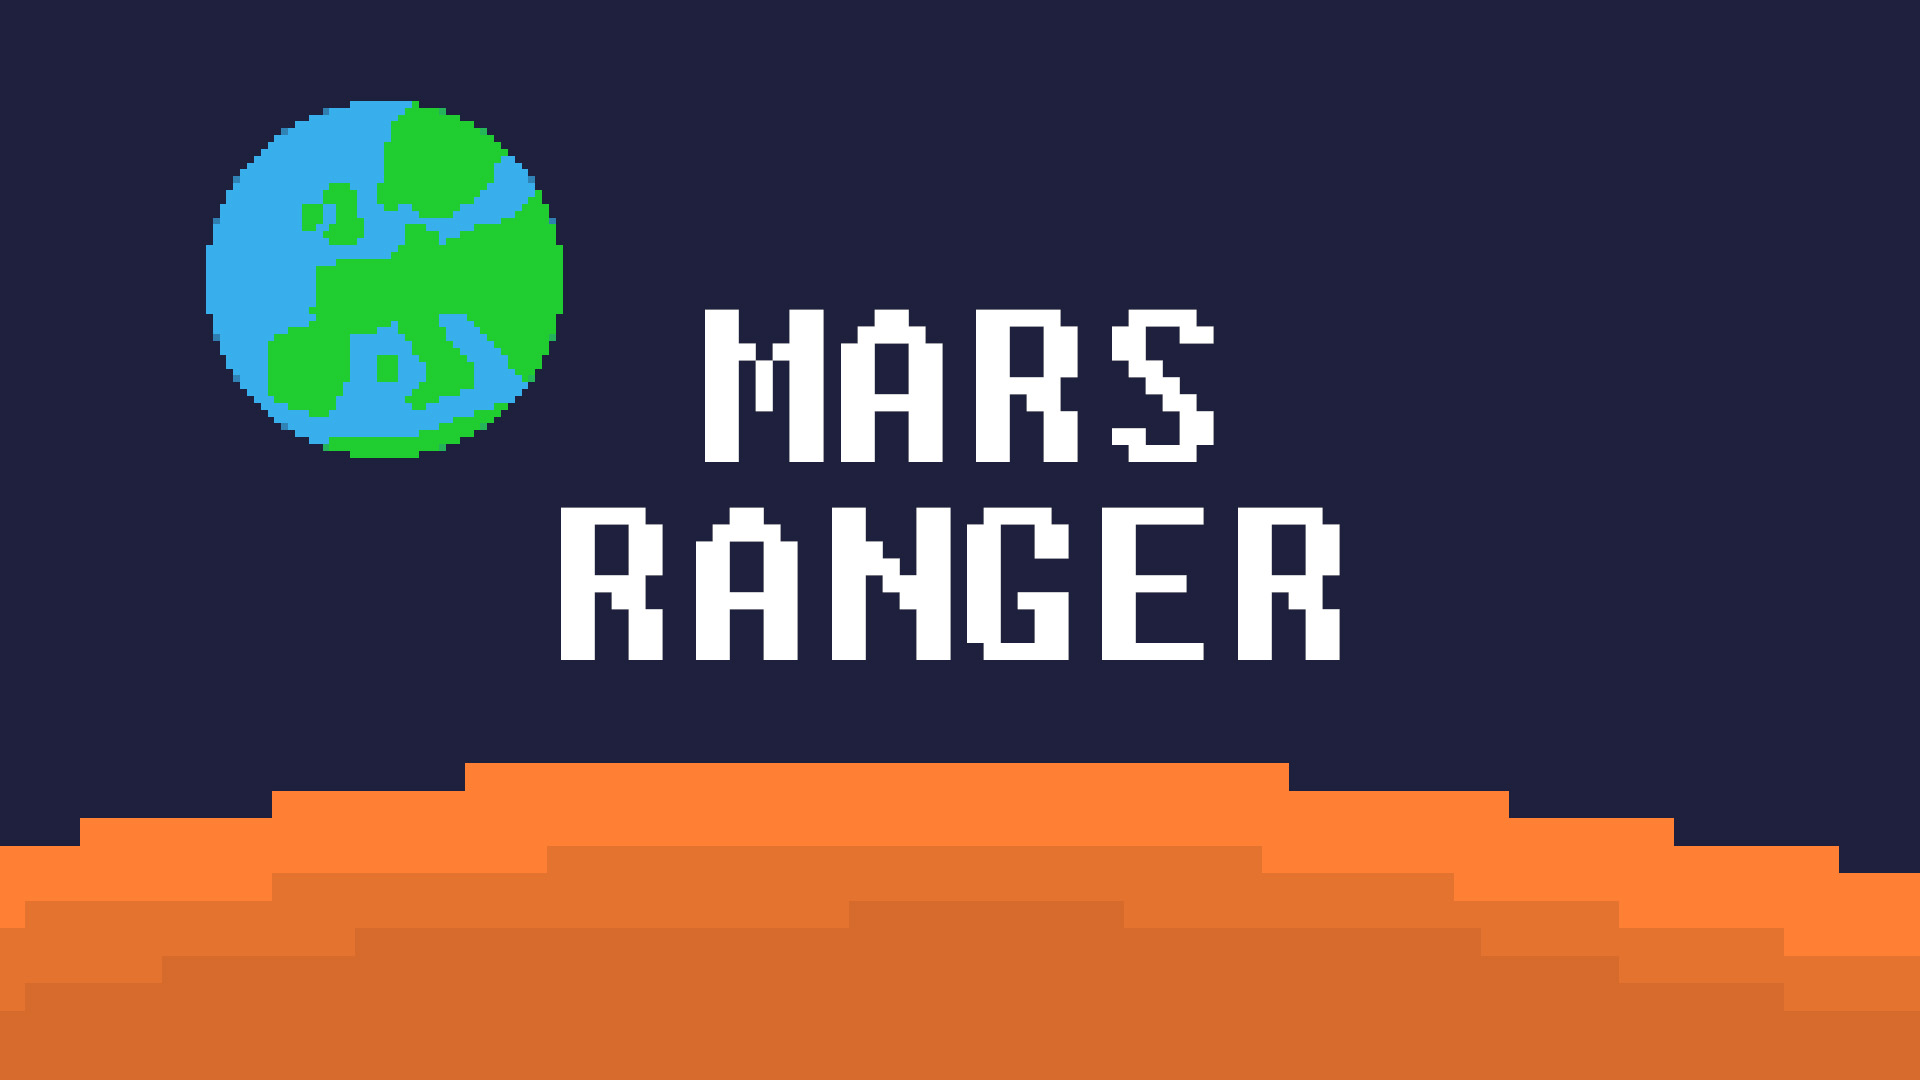 MARS RANGER